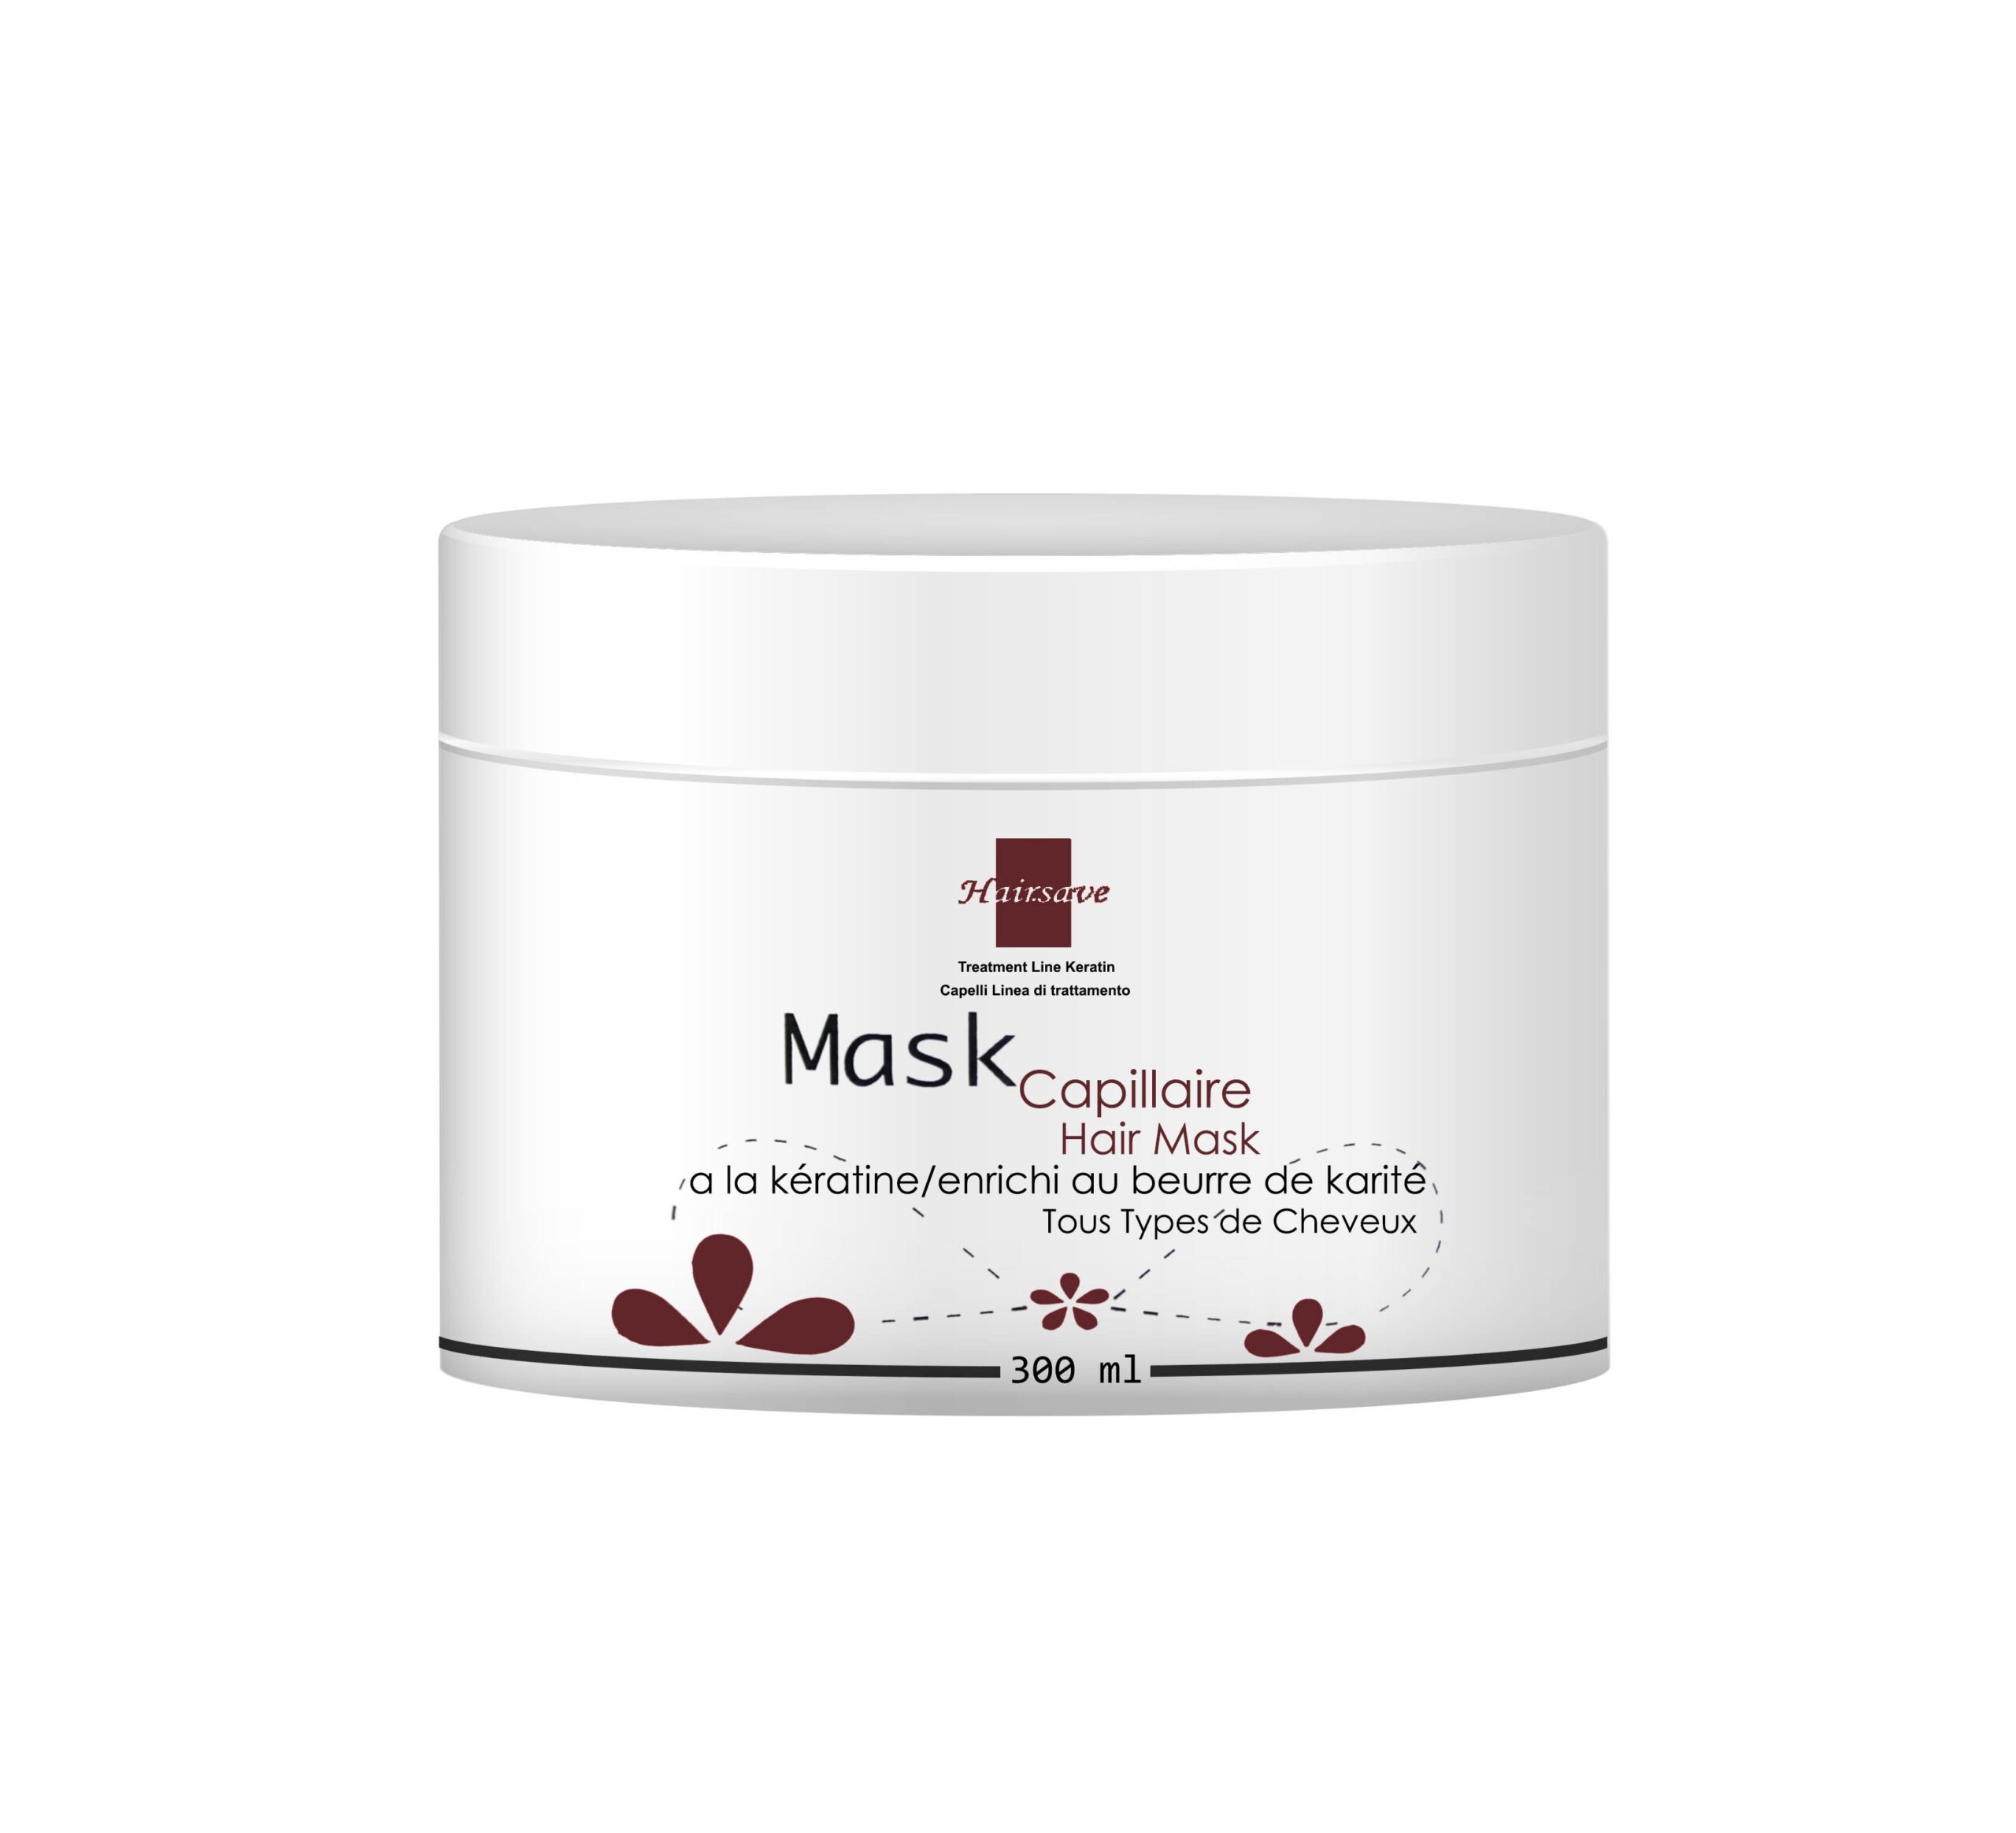 Hairsave masque capillaire à la kératine enrichi au beurre de karité pour tous types de cheveux – 300ml